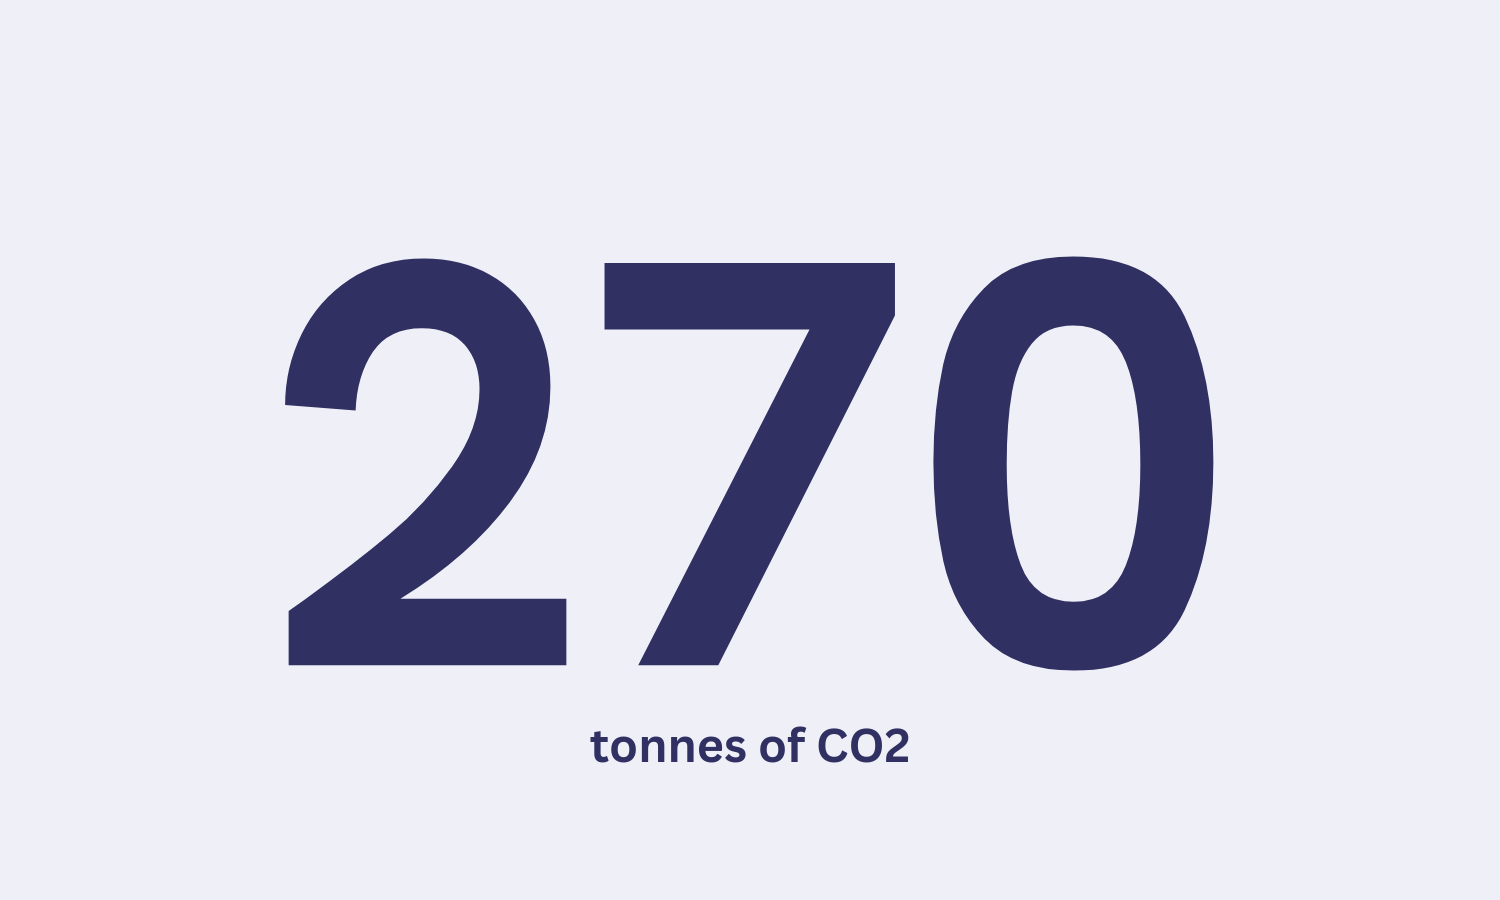 270 tonnes of carbon